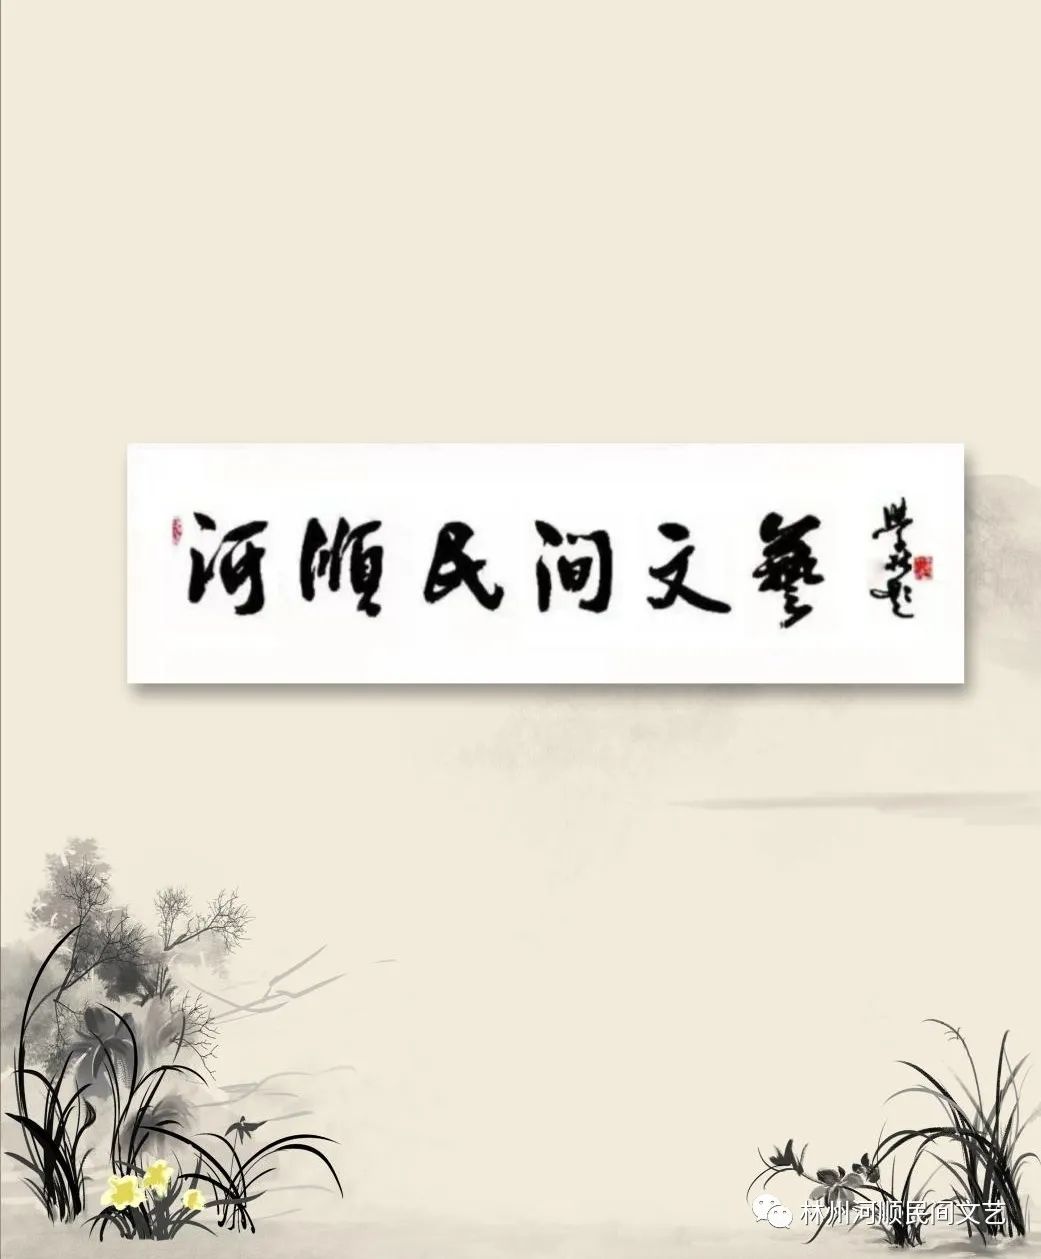 【河顺民间文艺. 第170期】晚舟归来（3）——情系十月 | 魏保山